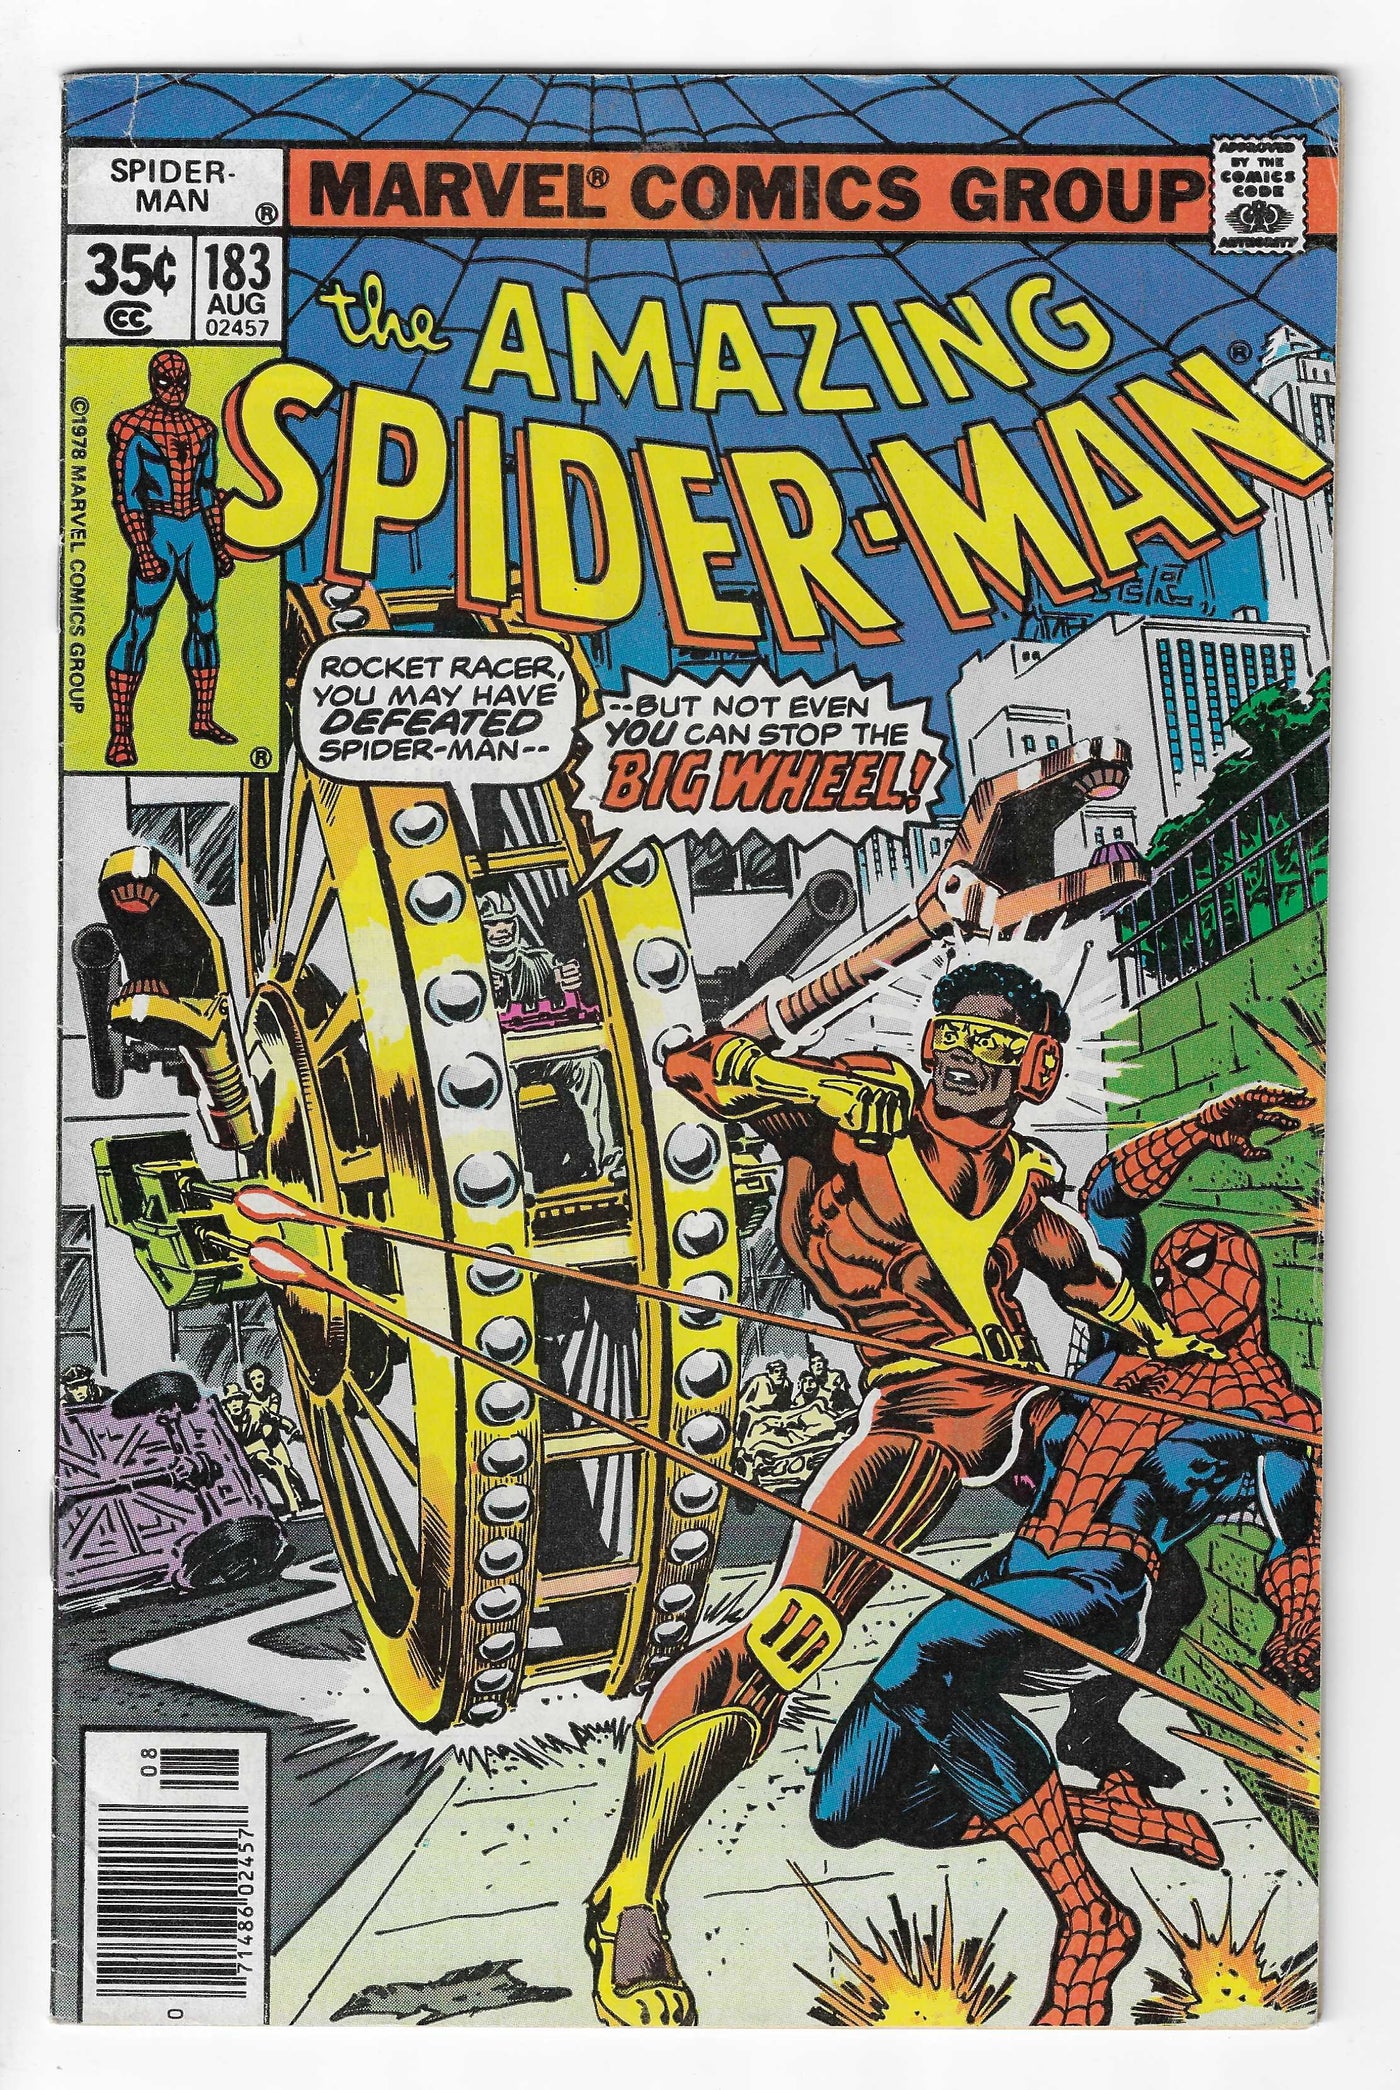 Amazing Spider-Man (Volume 1) #183